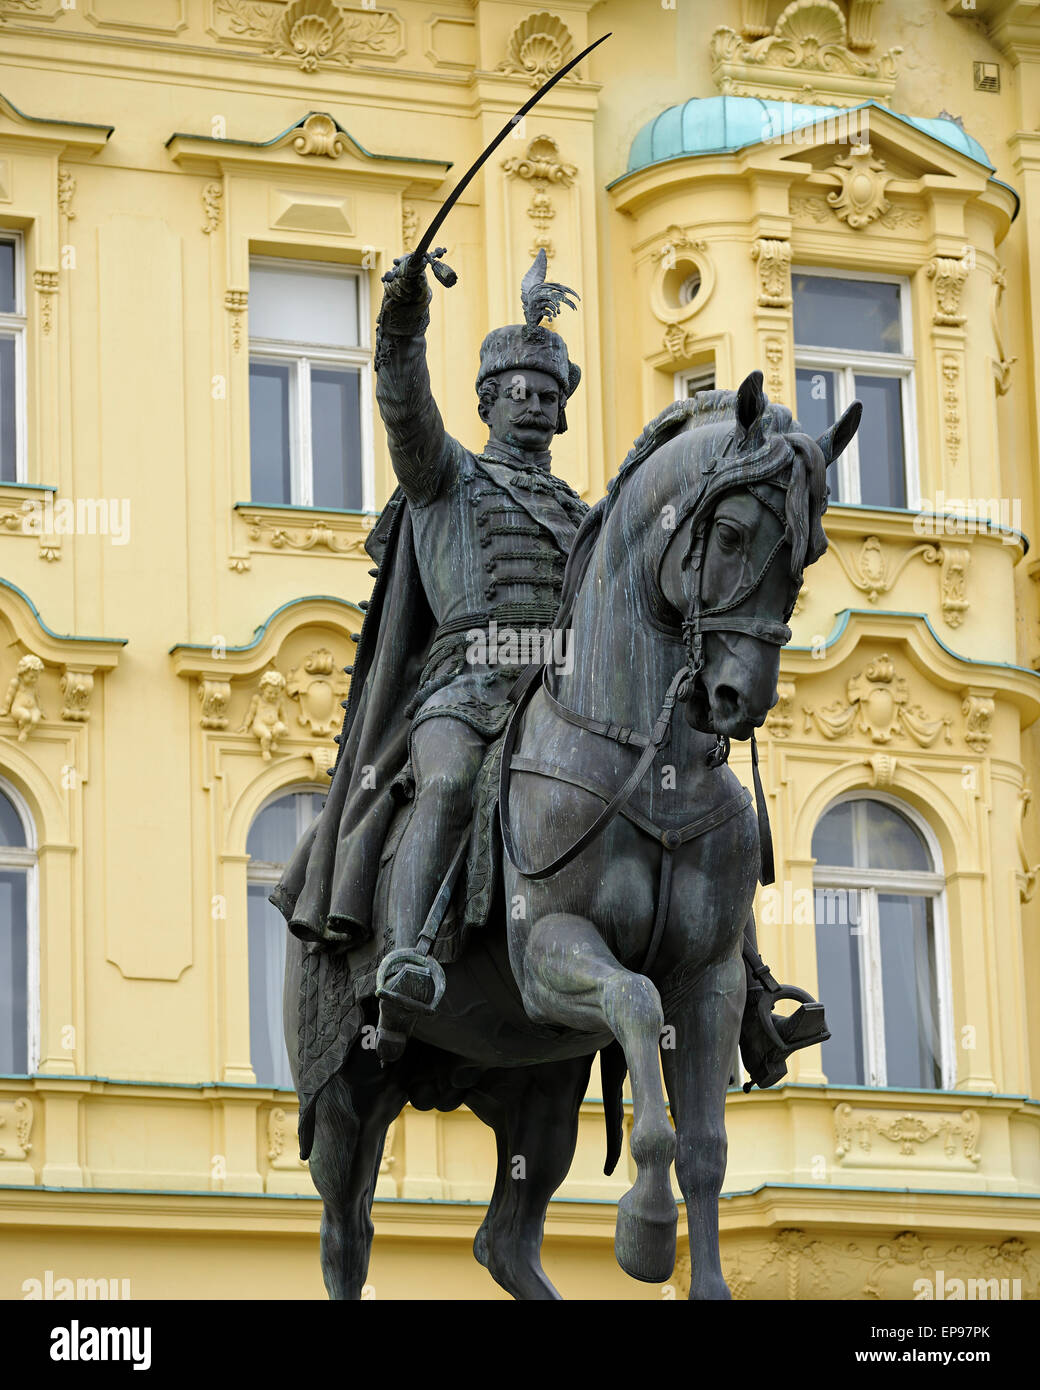 La statue de Josip sur la principale place Ban Jelacic, Zagreb, Croatie. Banque D'Images